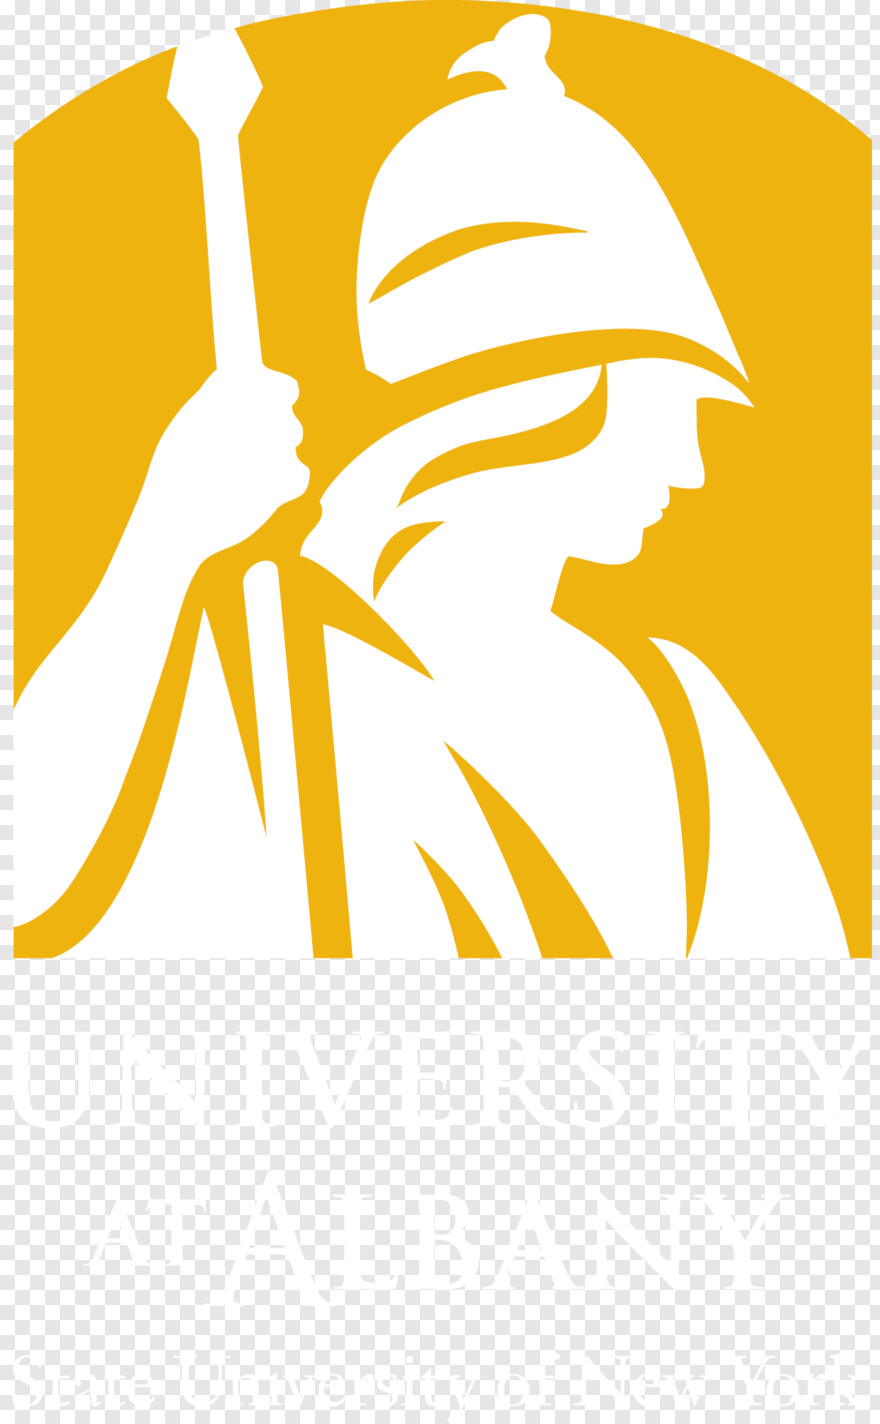 university-of-alabama-logo # 596101